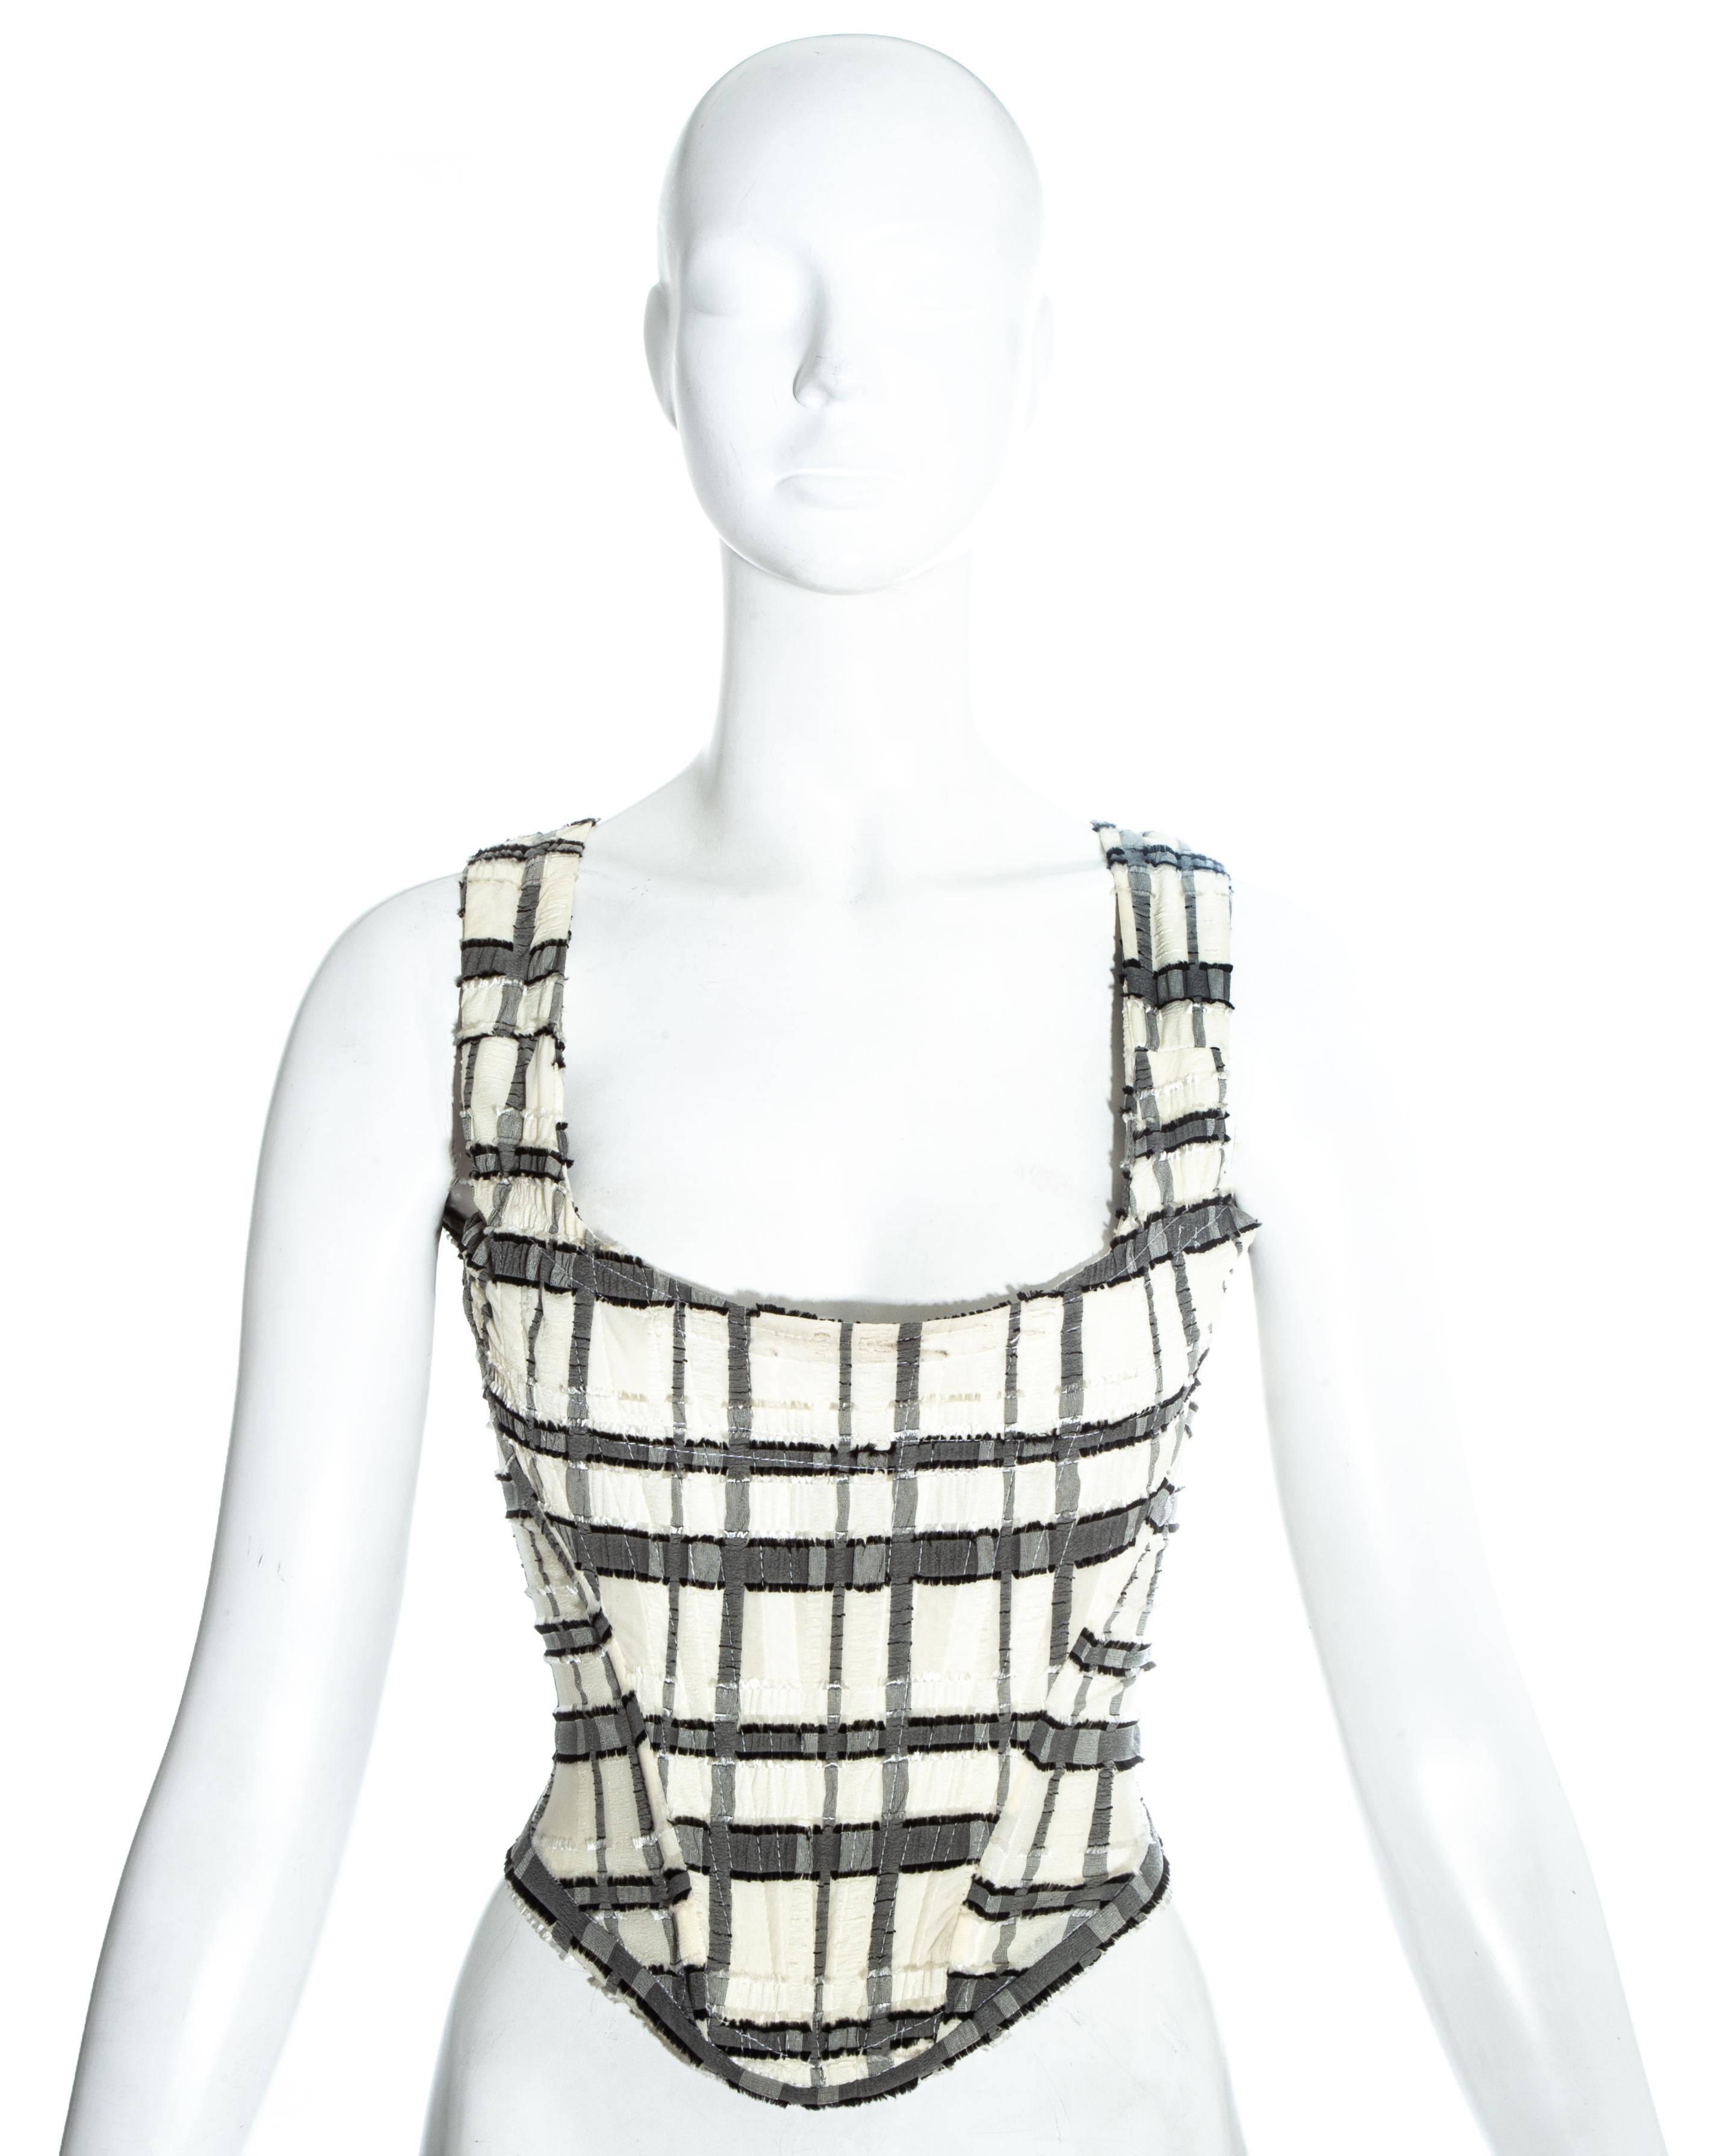 Weiß und grau kariertes Korsett von Vivienne Westwood, das die Taille einschnürt und die Brüste nach oben drückt.

Frühjahr-Sommer 1994